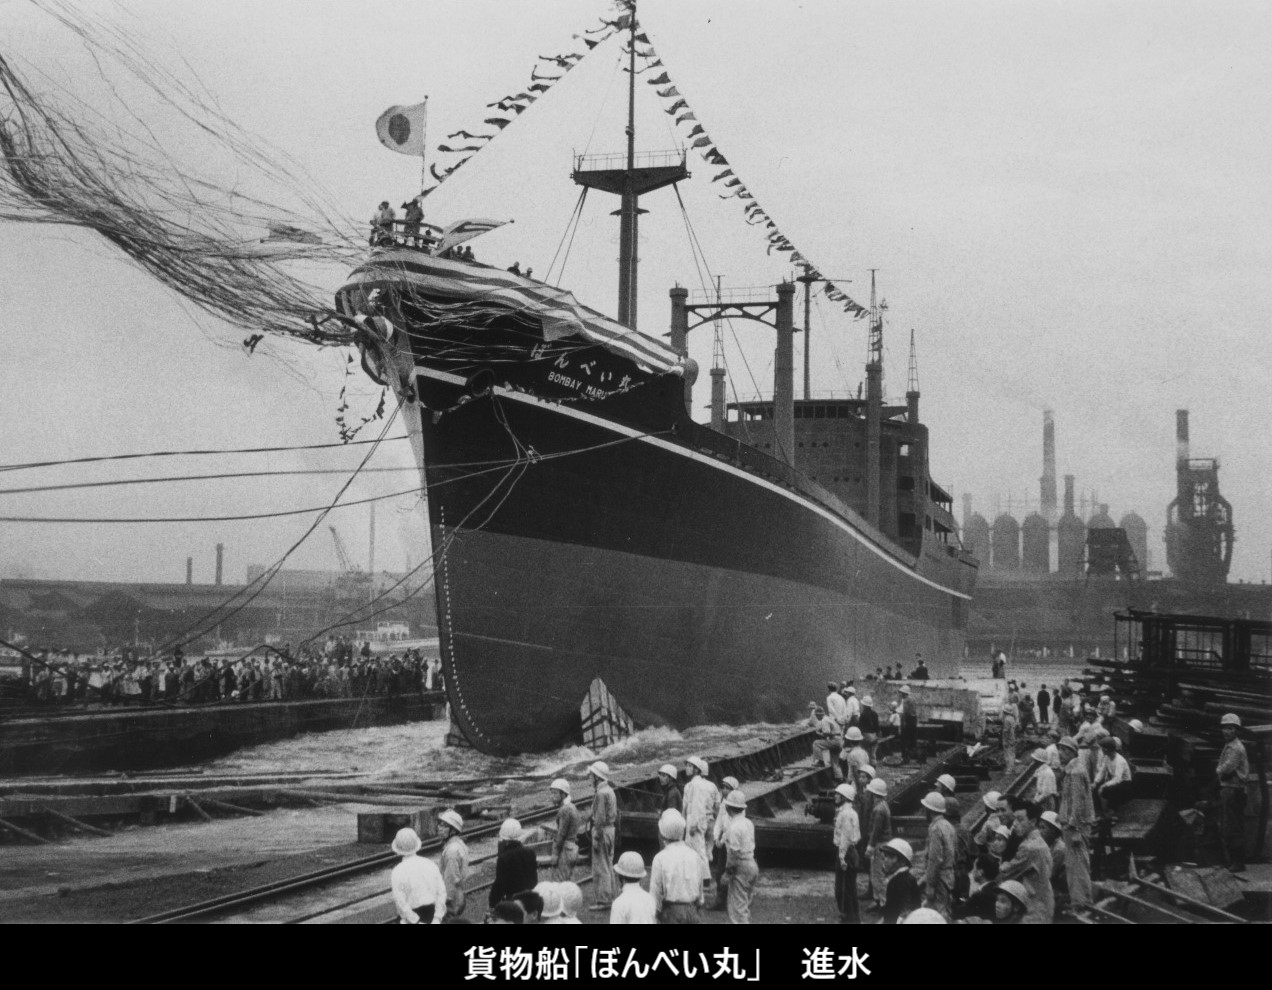 大阪商船「ぼんべい丸」写真集 | デジタル造船資料館